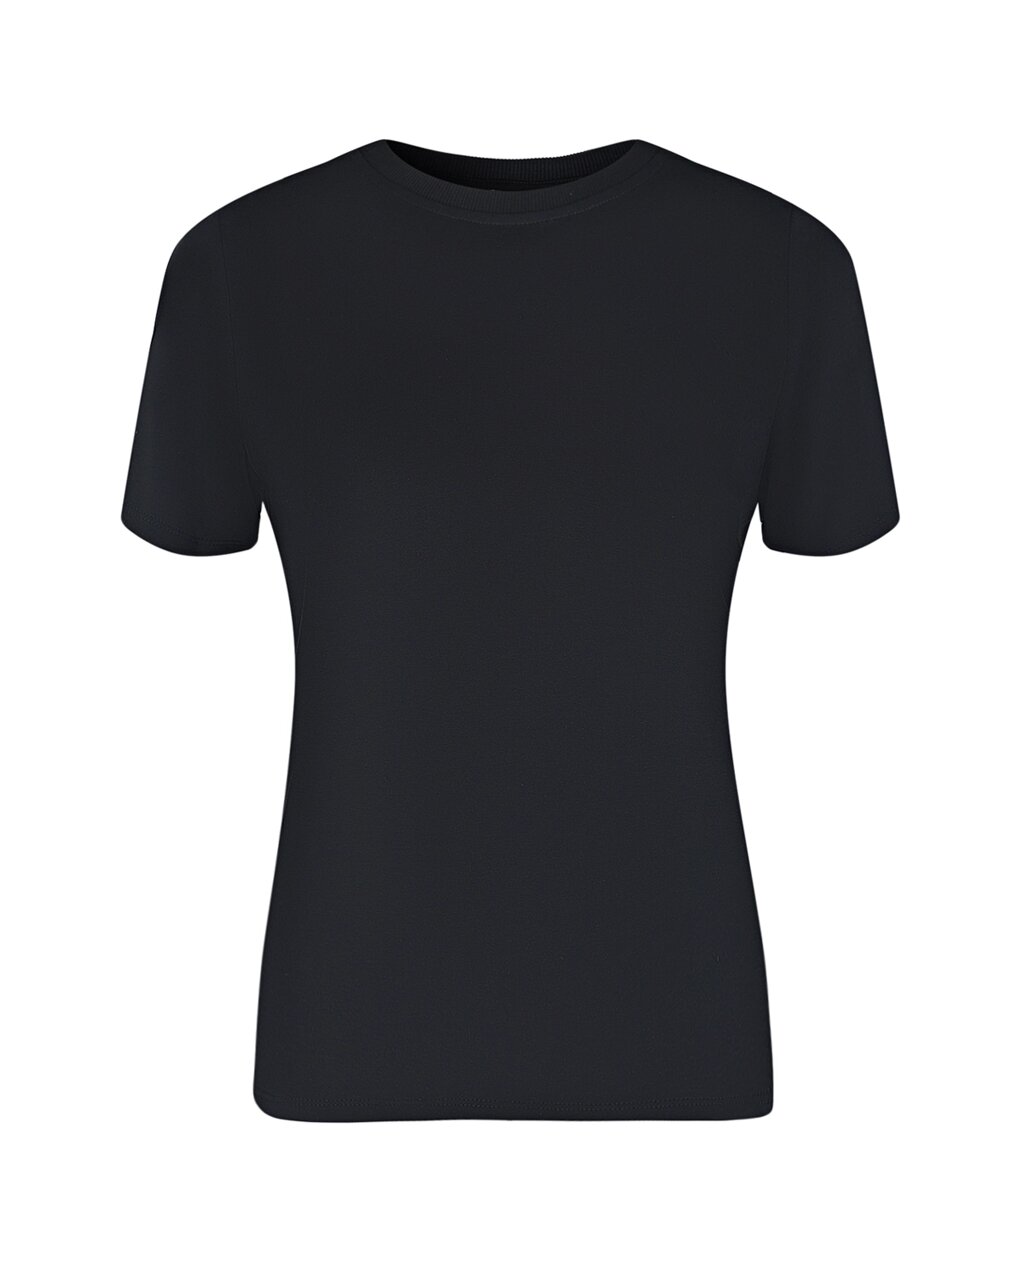 Черная базовая футболка Dan Maralex от компании Admi - фото 1